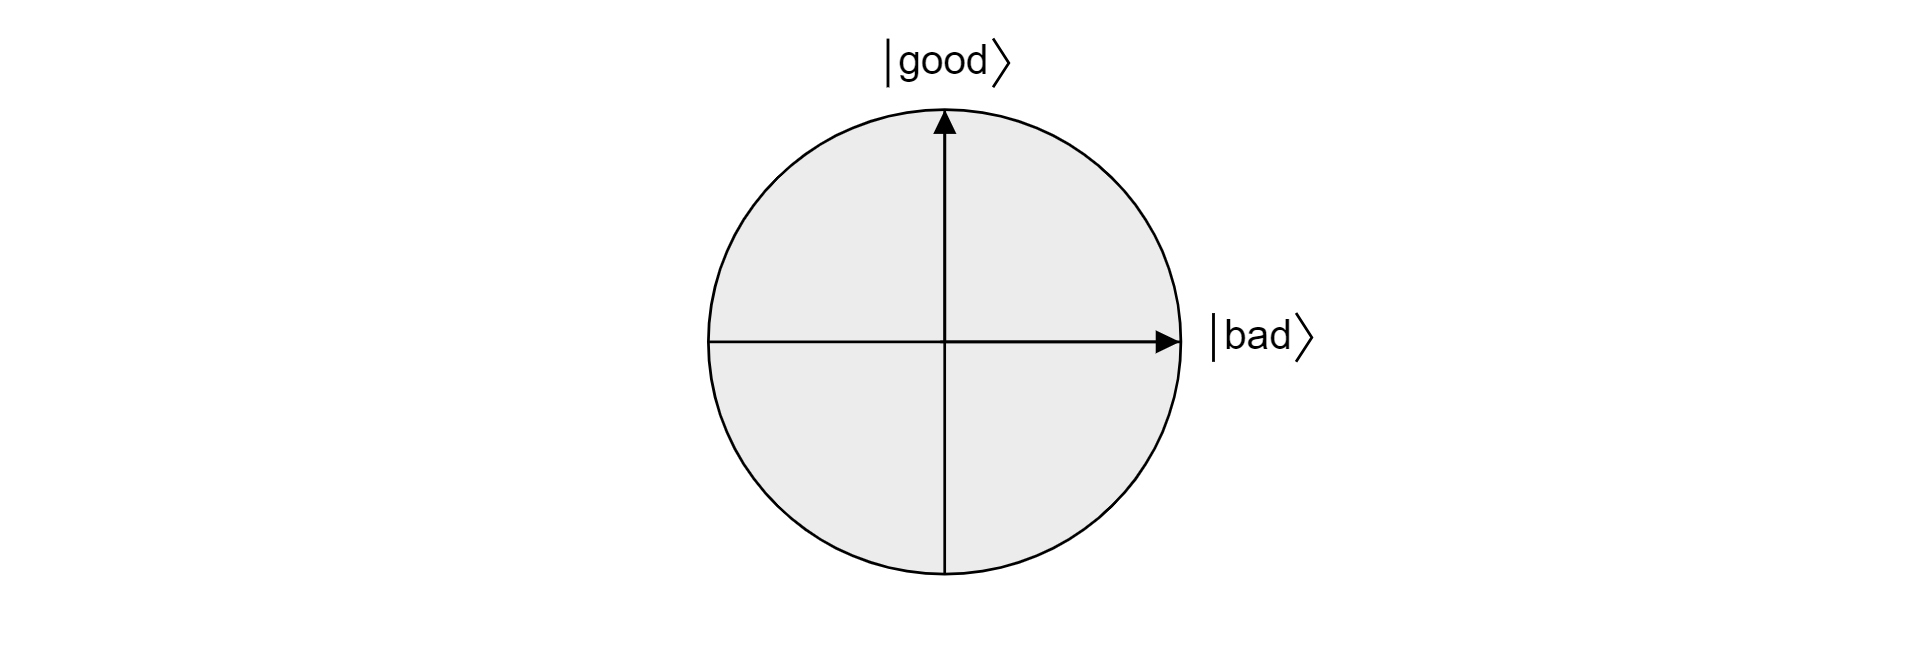 Trazado del plano en la esfera de Bloch proyectado por los vectores ortogonales buenos y malos.